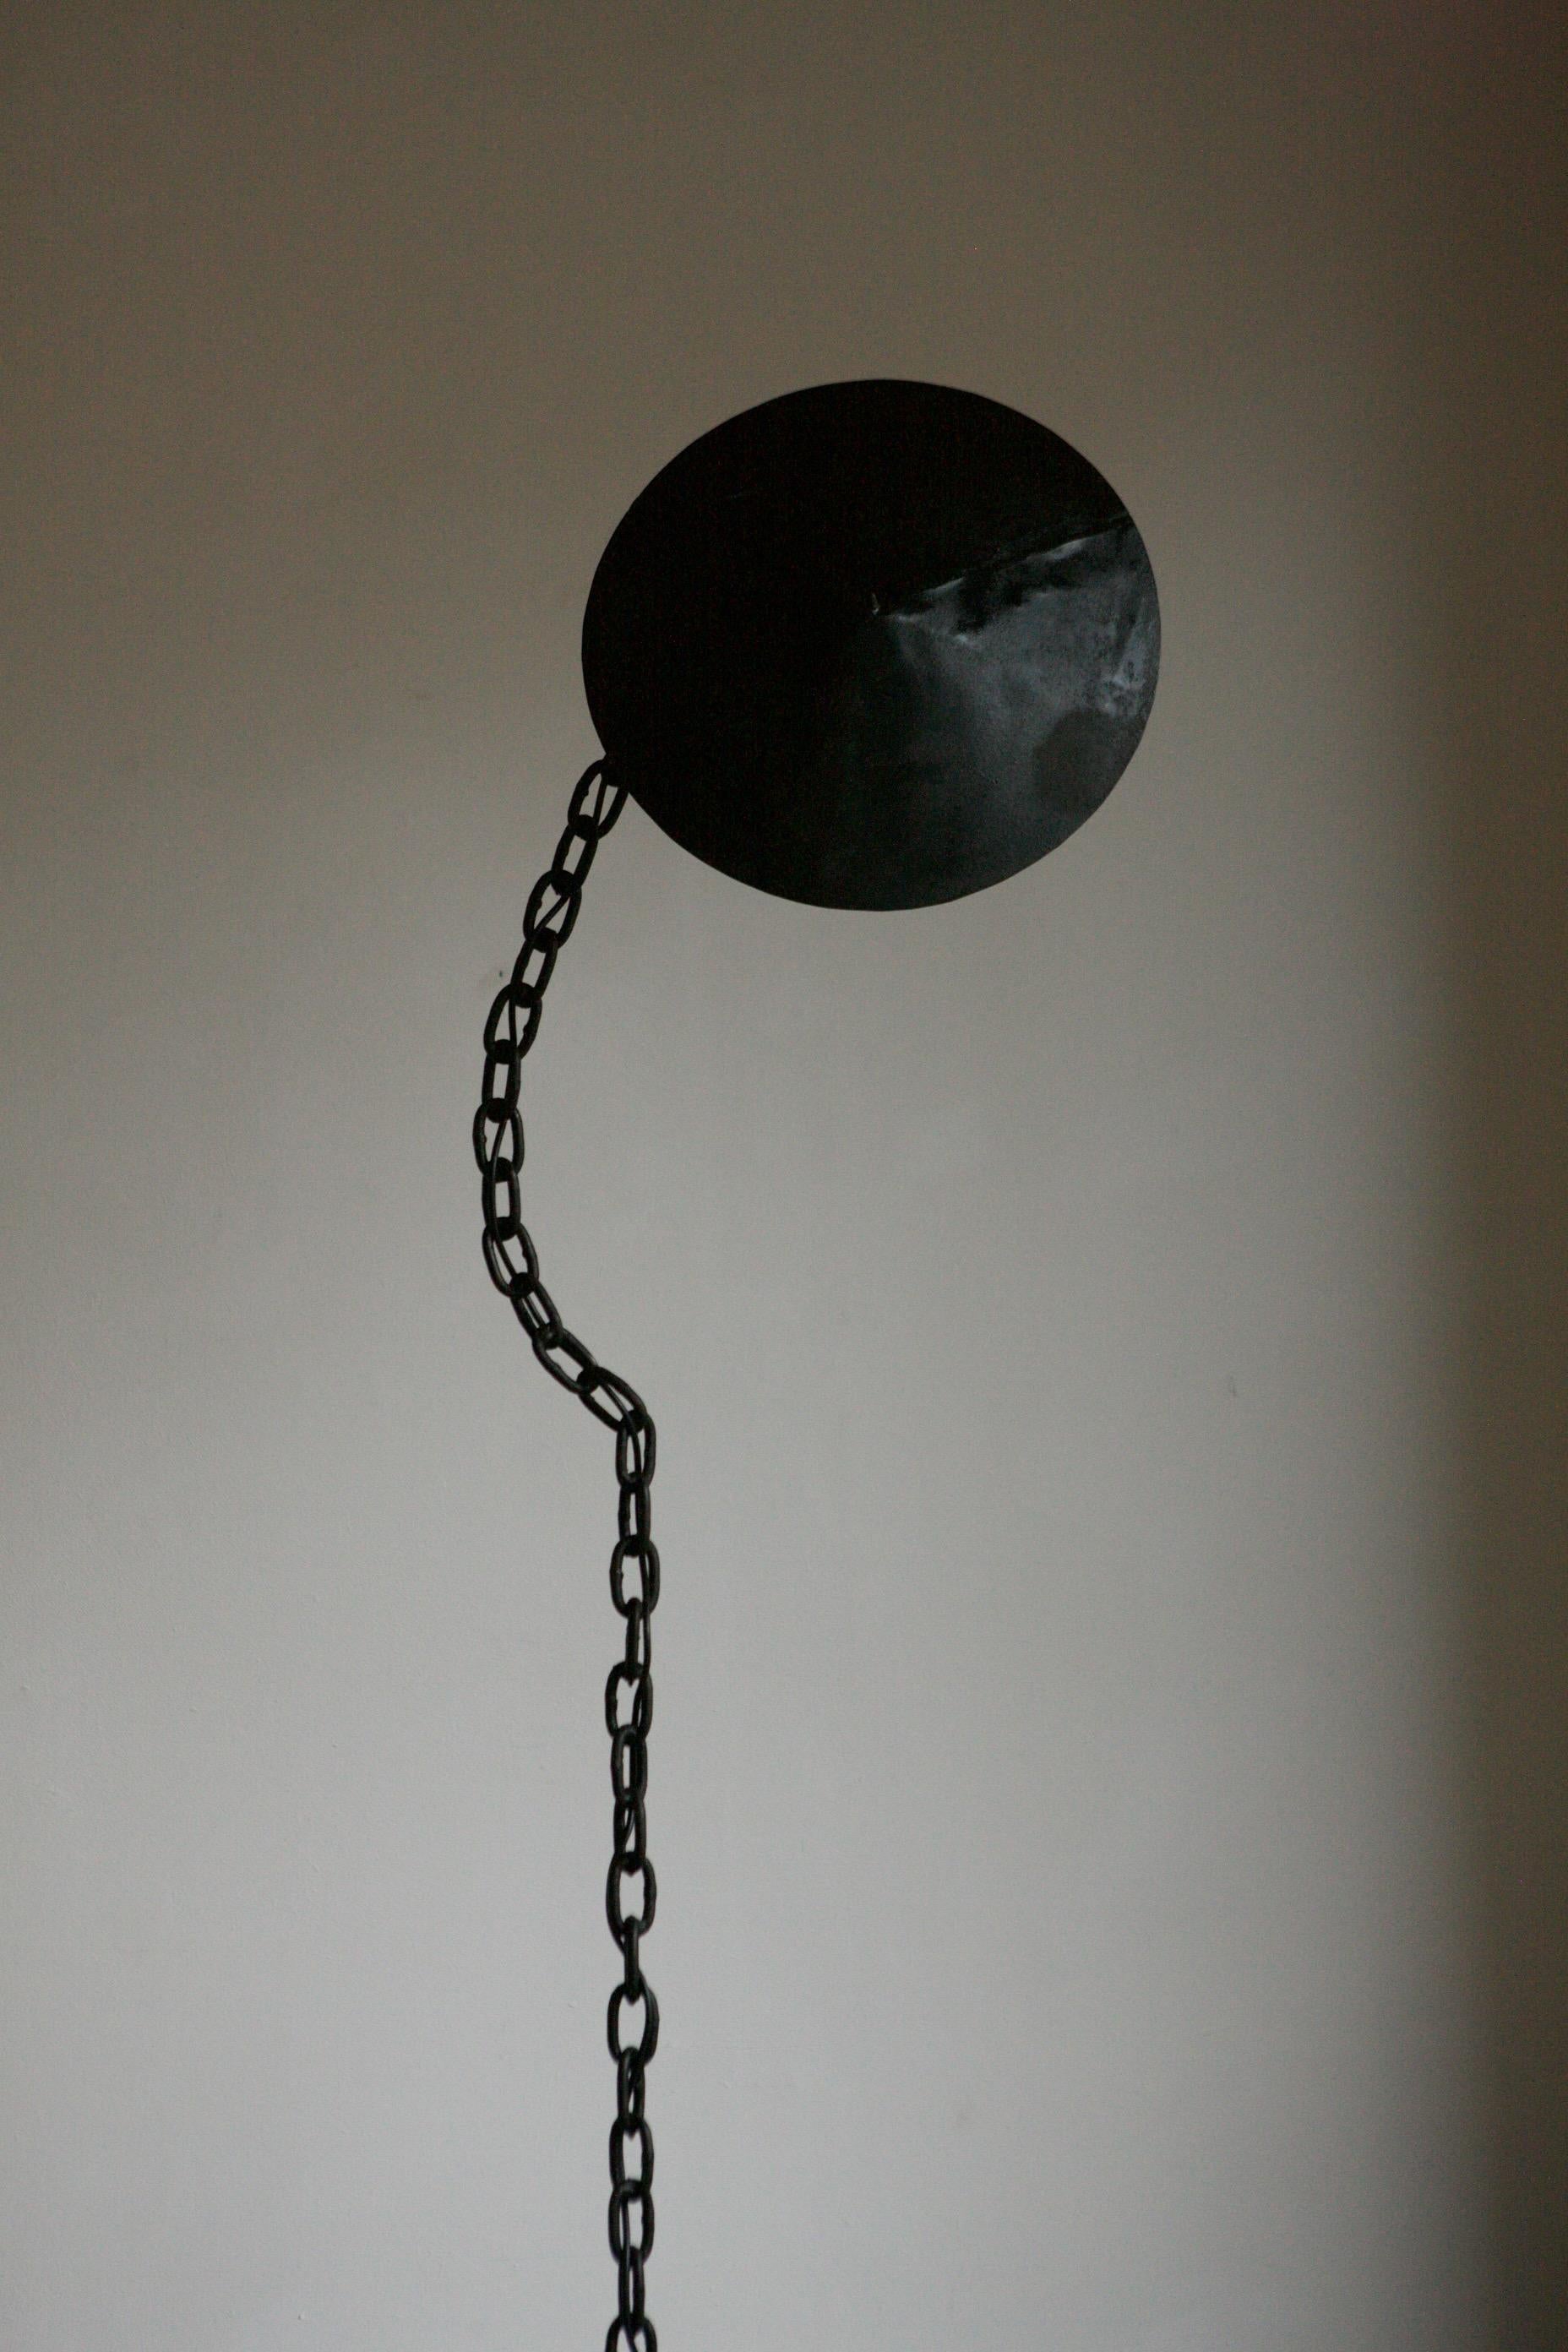 Schwarze Stehlampe mit Kette und kegelförmigem Schirm, der eine Glühbirnenfassung verdeckt. Der Kettenstiel ist in einer fließenden Form zusammengeschweißt, um die Illusion einer hängenden Kette zu erzeugen.
